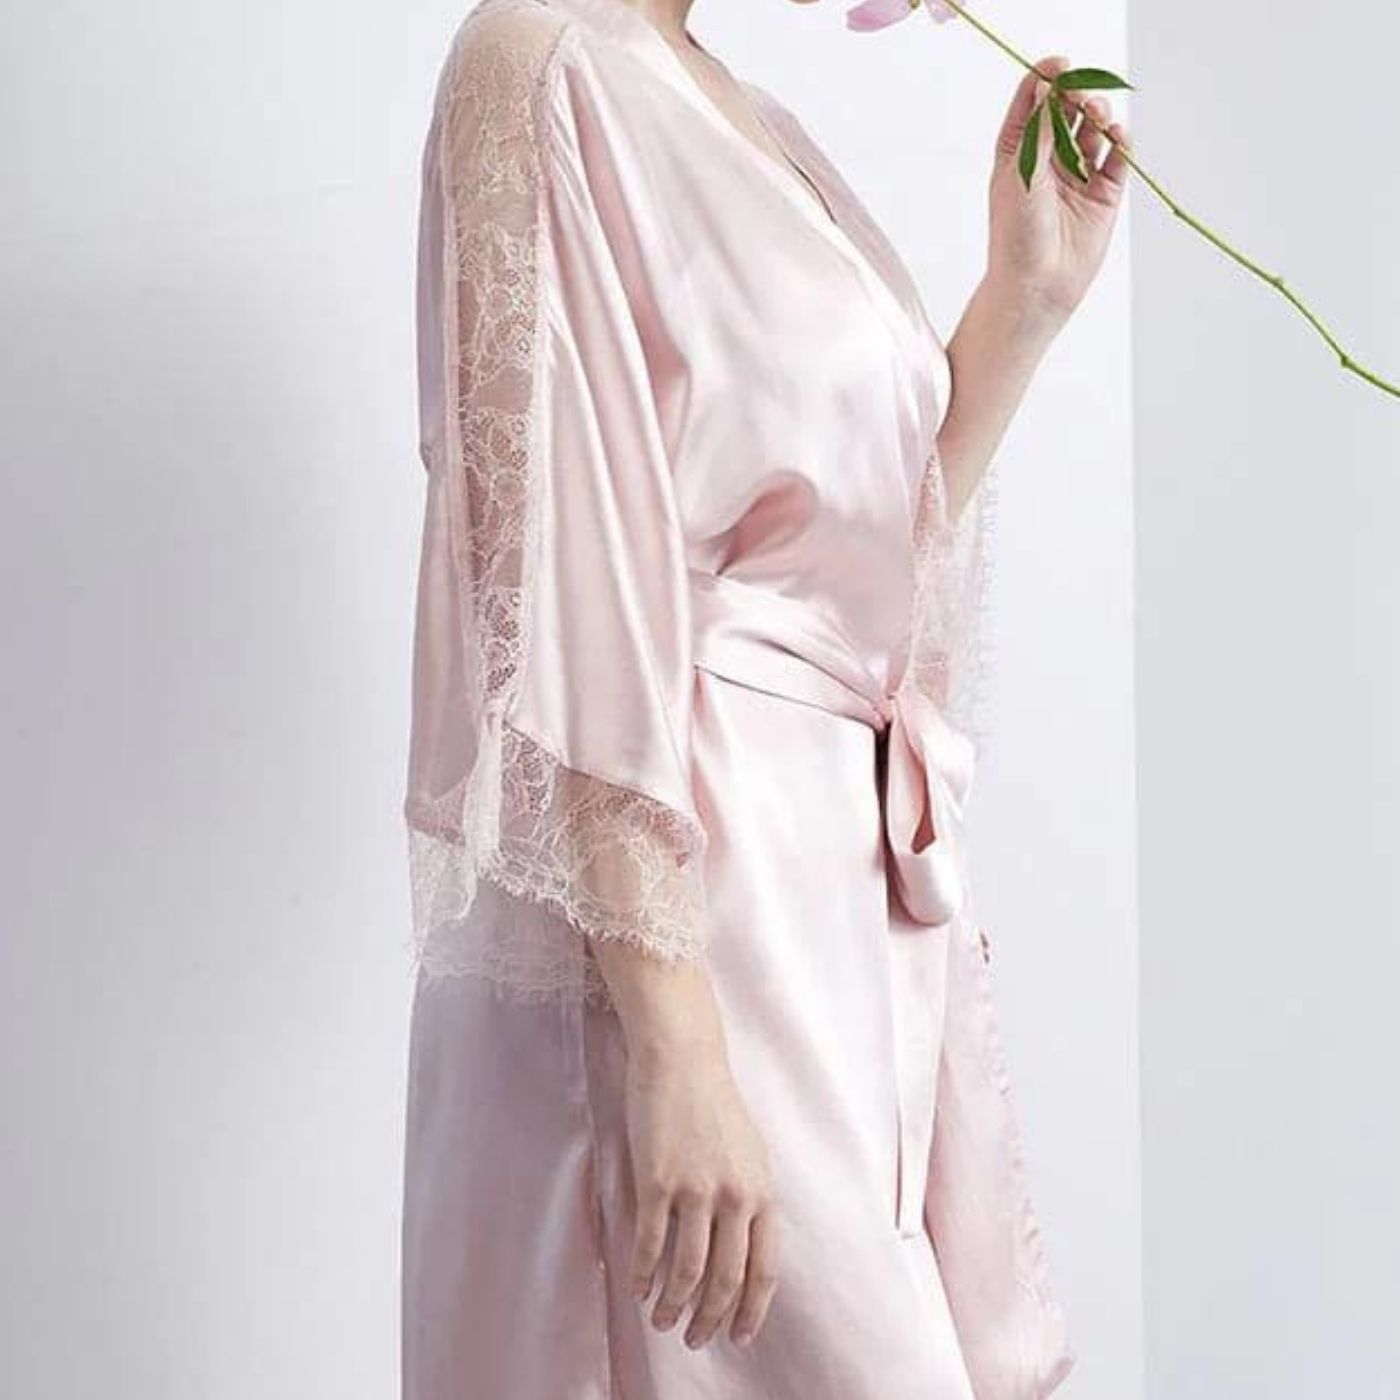 100% Pure Real Mulberry Silk Robe Nightwear Sleepwear Loungewear Luxury Pyjamas pajamas Pink Blue Lace Sleeves Mid length UK US France Spain Belgium